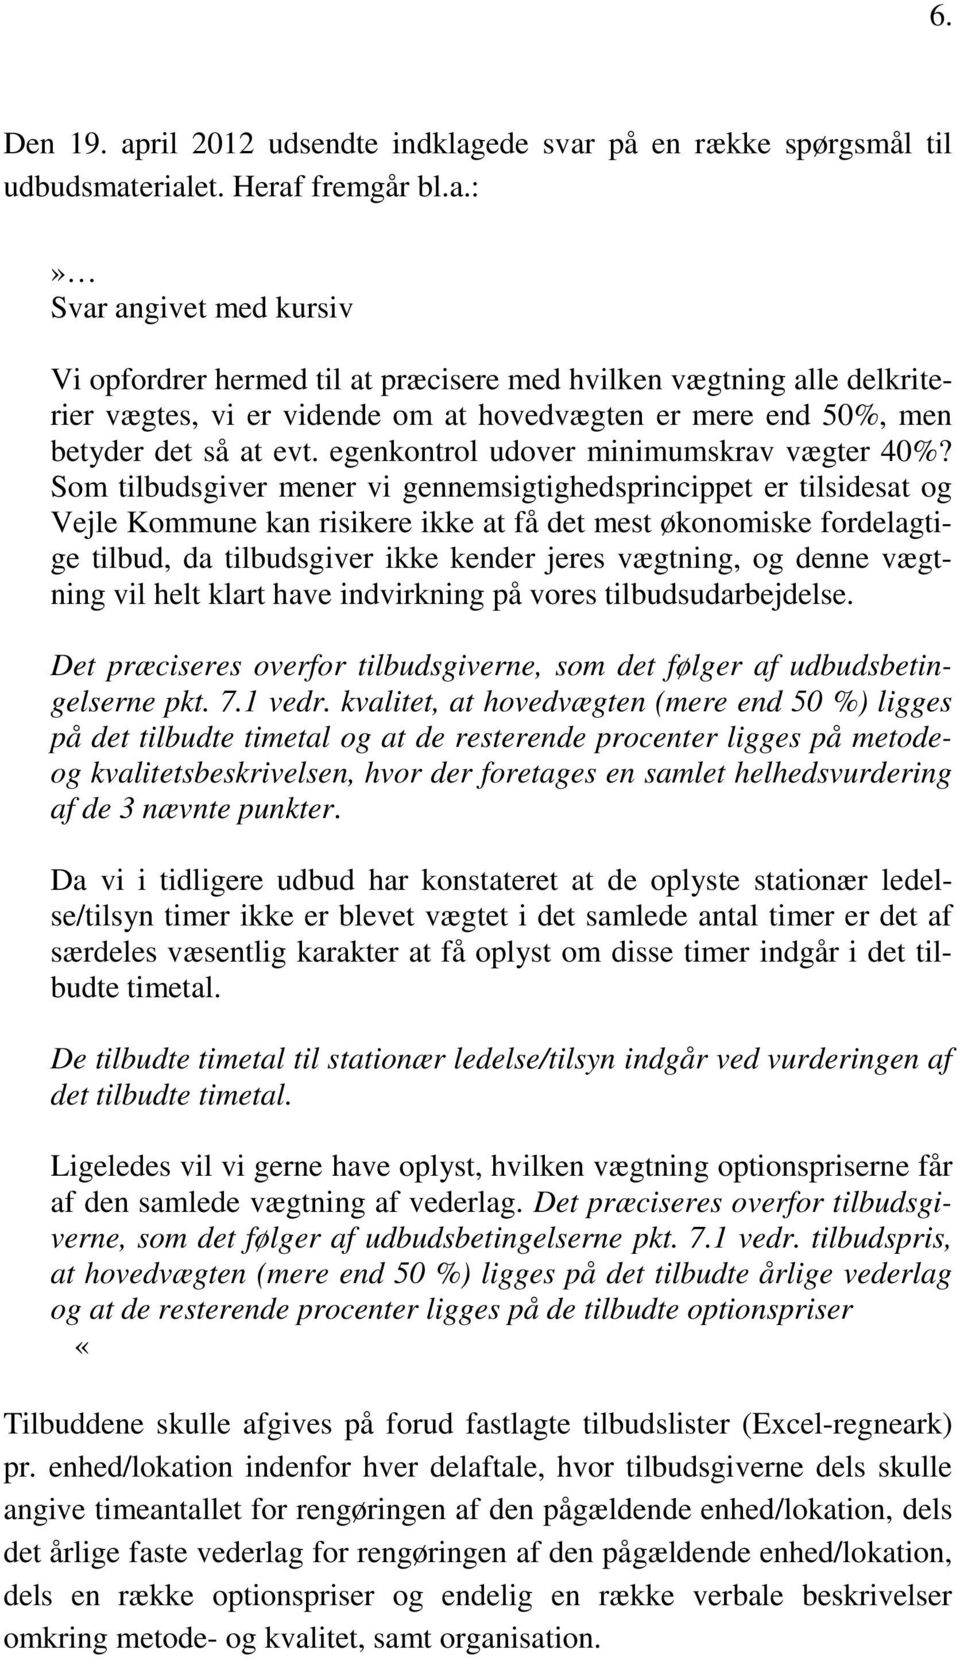 Som tilbudsgiver mener vi gennemsigtighedsprincippet er tilsidesat og Vejle Kommune kan risikere ikke at få det mest økonomiske fordelagtige tilbud, da tilbudsgiver ikke kender jeres vægtning, og